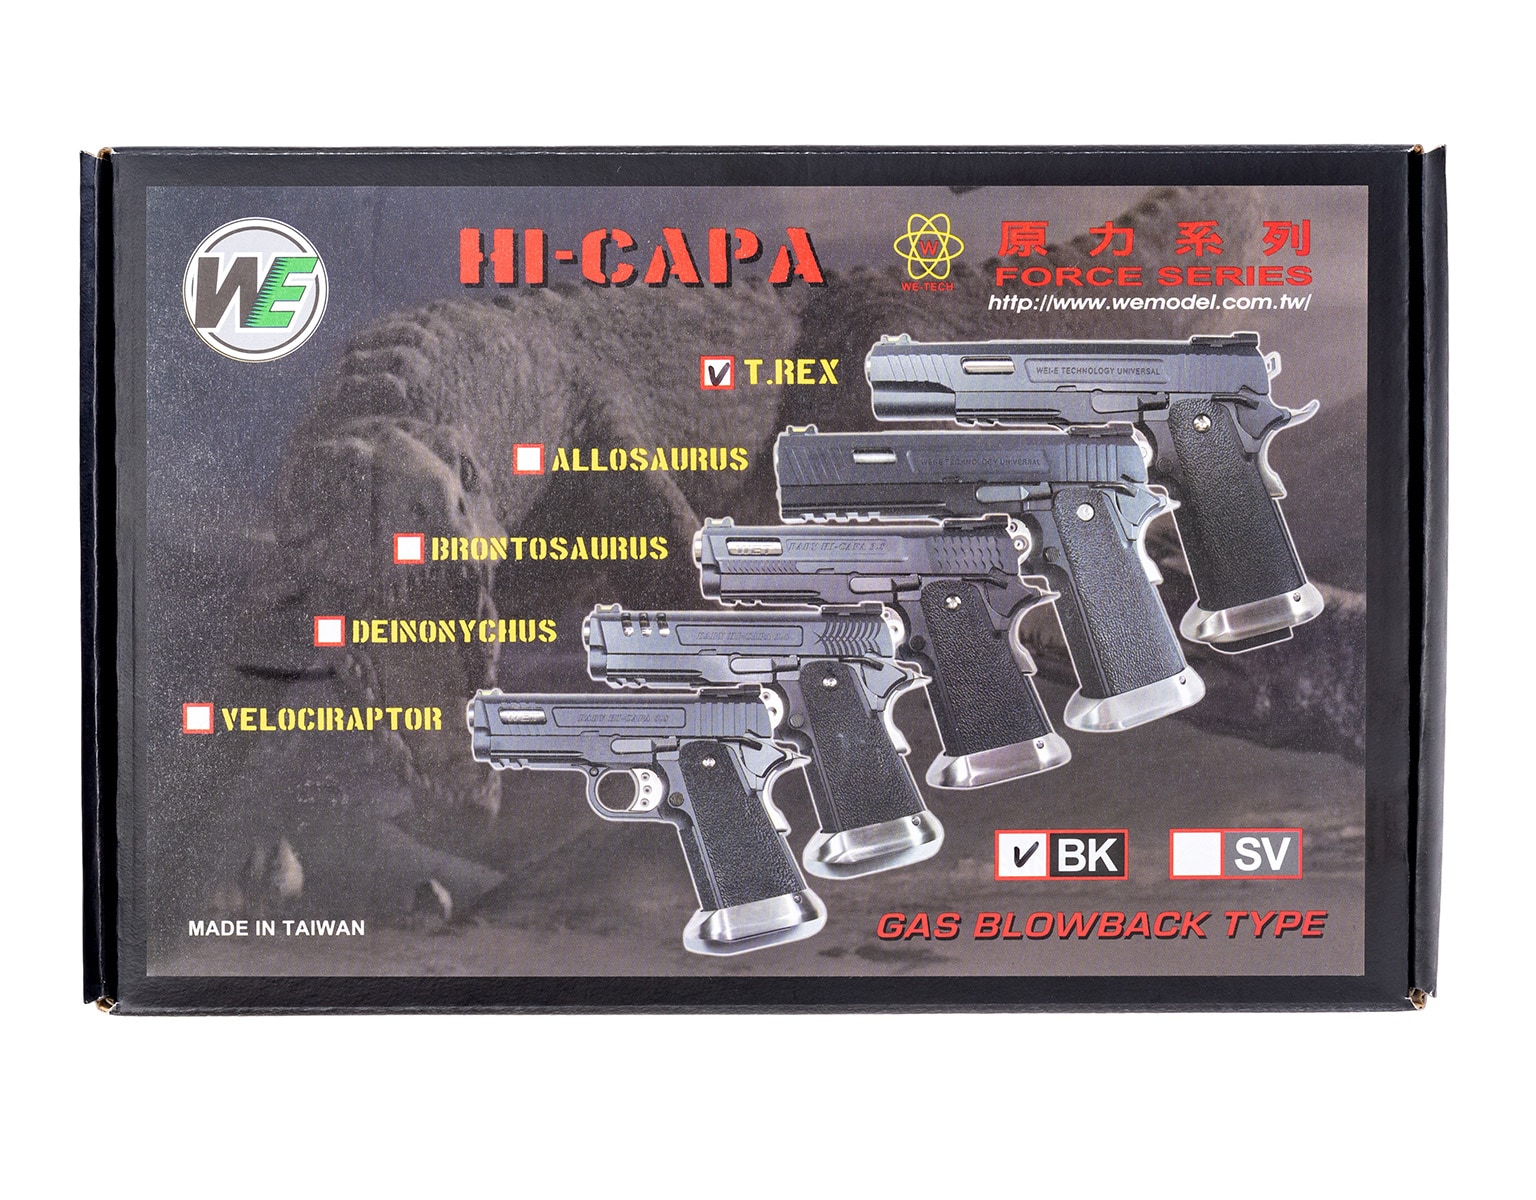 Пістолет GBB WE Hi-Capa 4.3 Allosaurus сріблястий